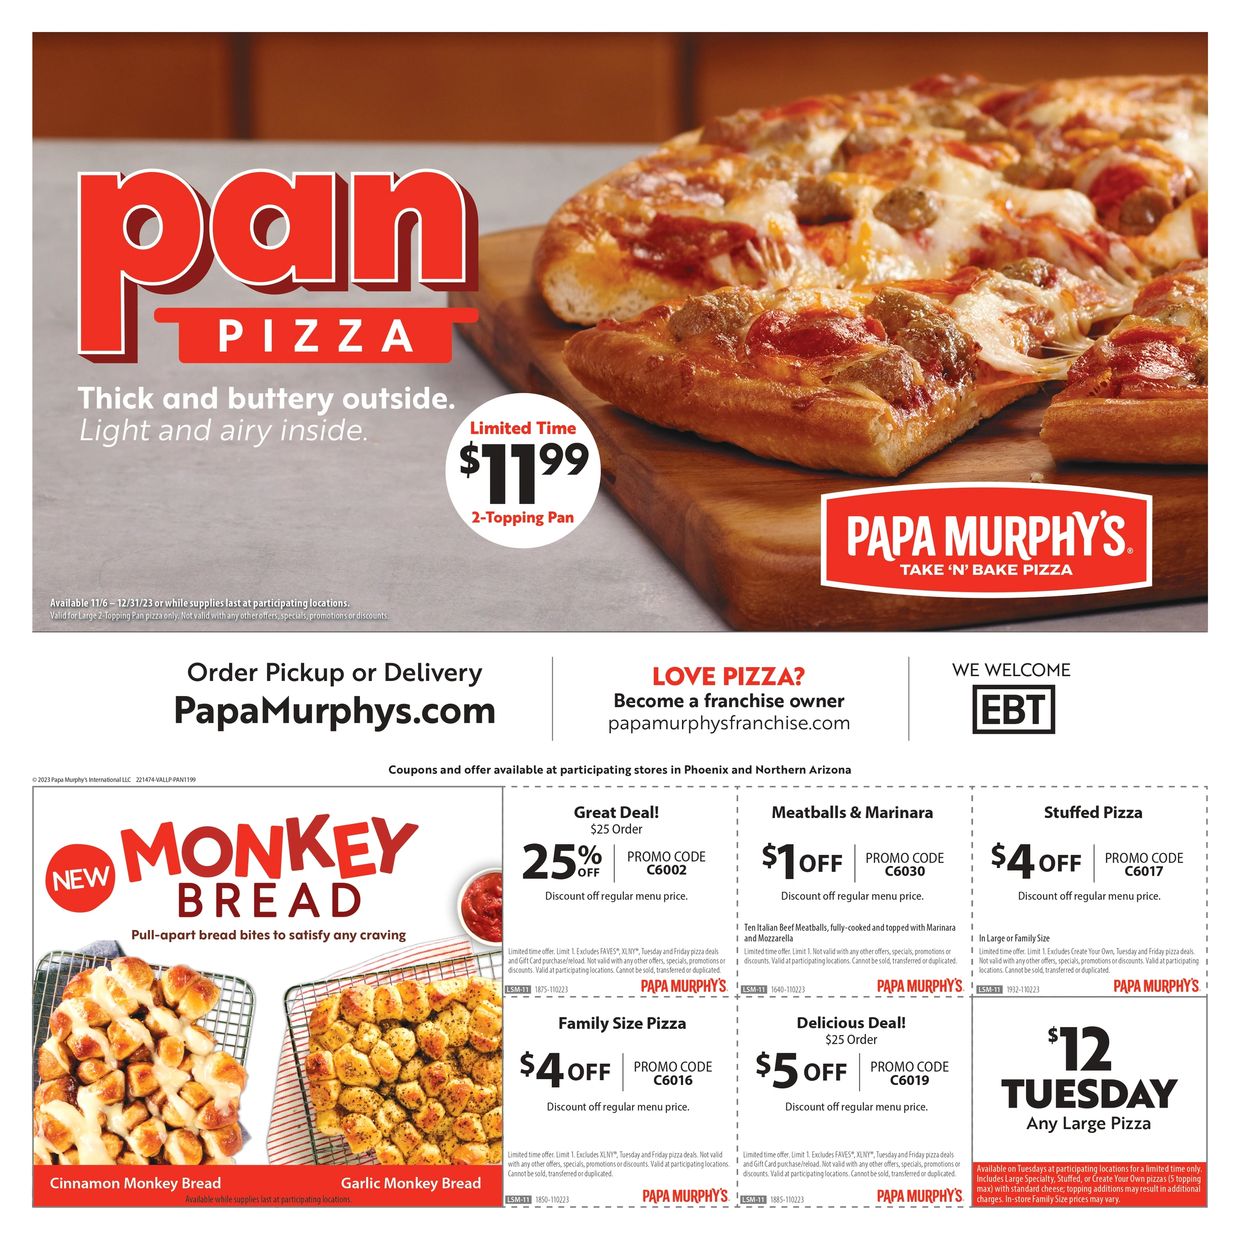 Papa Murphy's Pan Pizza Baking Instructions